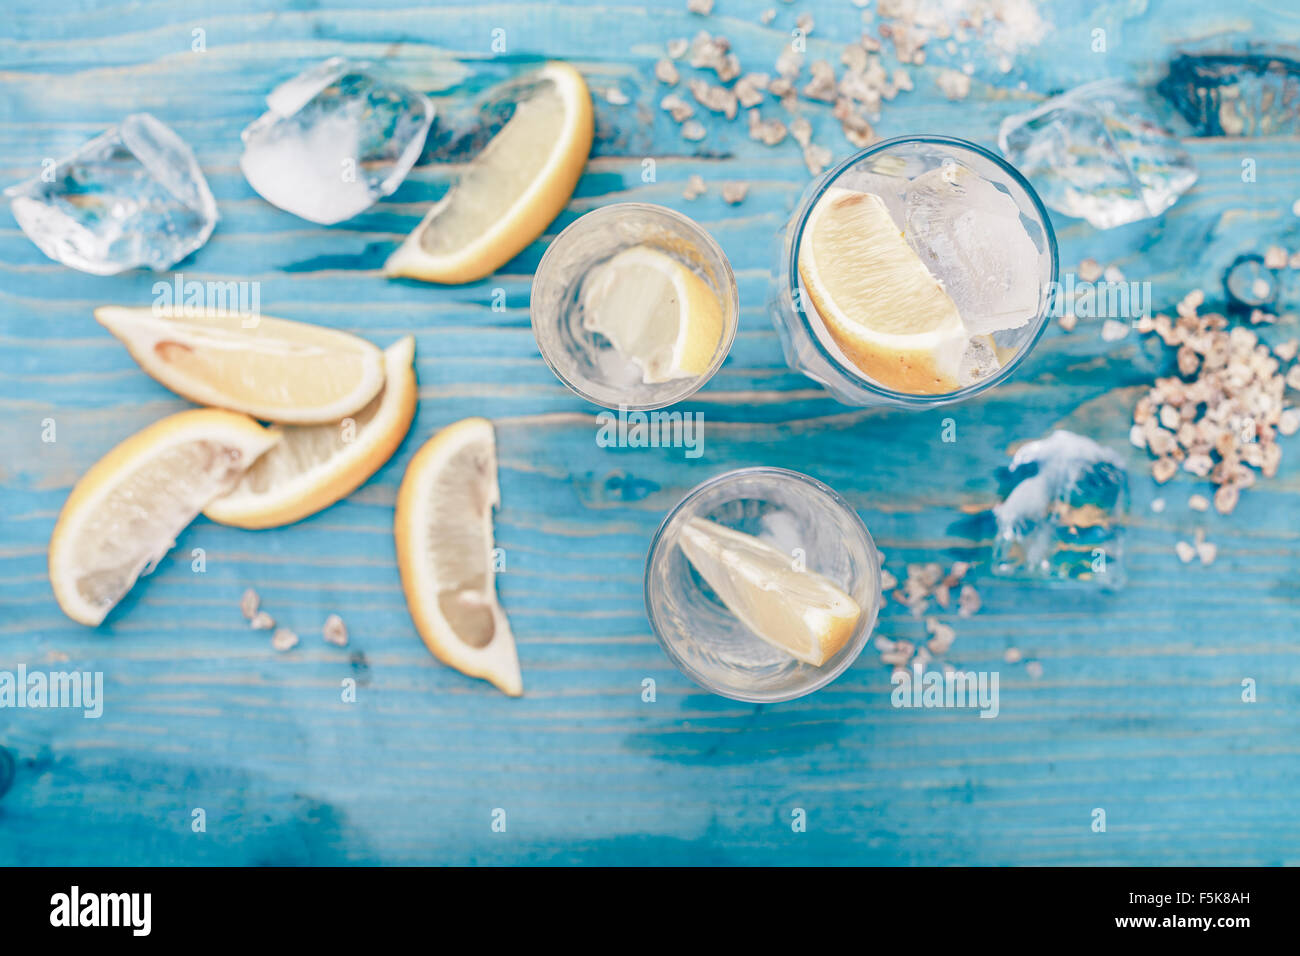 Ingrédients pour la limonade. Citrons tranchés, rugueux de la glace concassée et le sucre de canne sur la table en bois bleu. Selective focus Banque D'Images